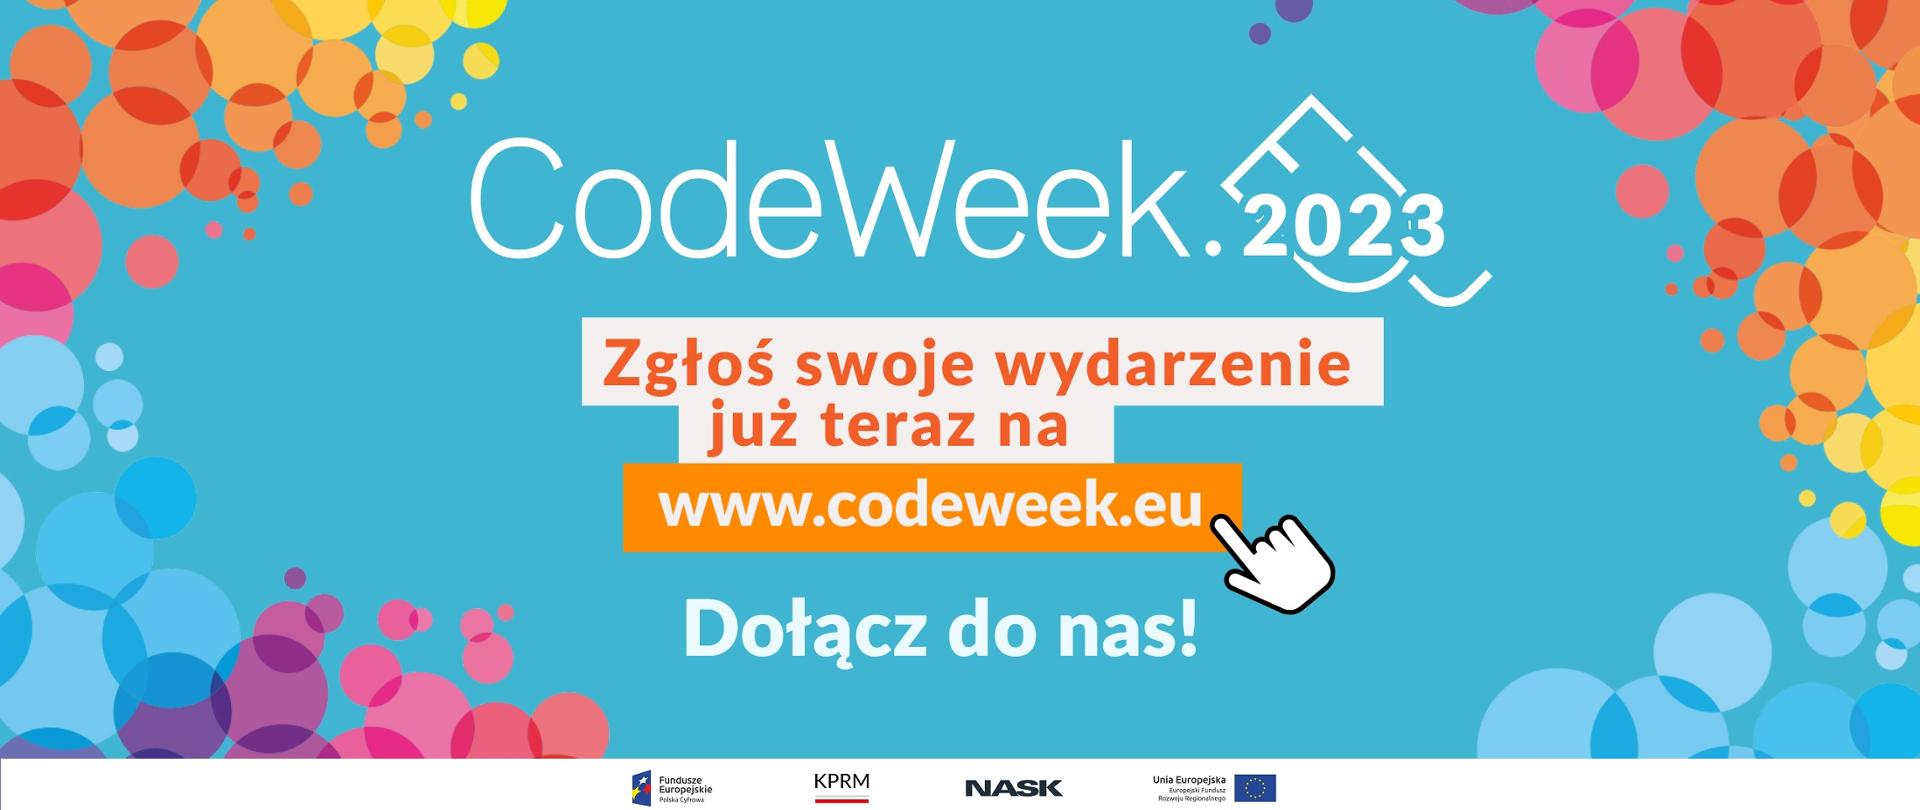 Grafika wektorowa z tekstem:CodeWeek 2023 - zgłoś swoje wydarzenie już teraz na codeweek.eu. Dołącz do nas!